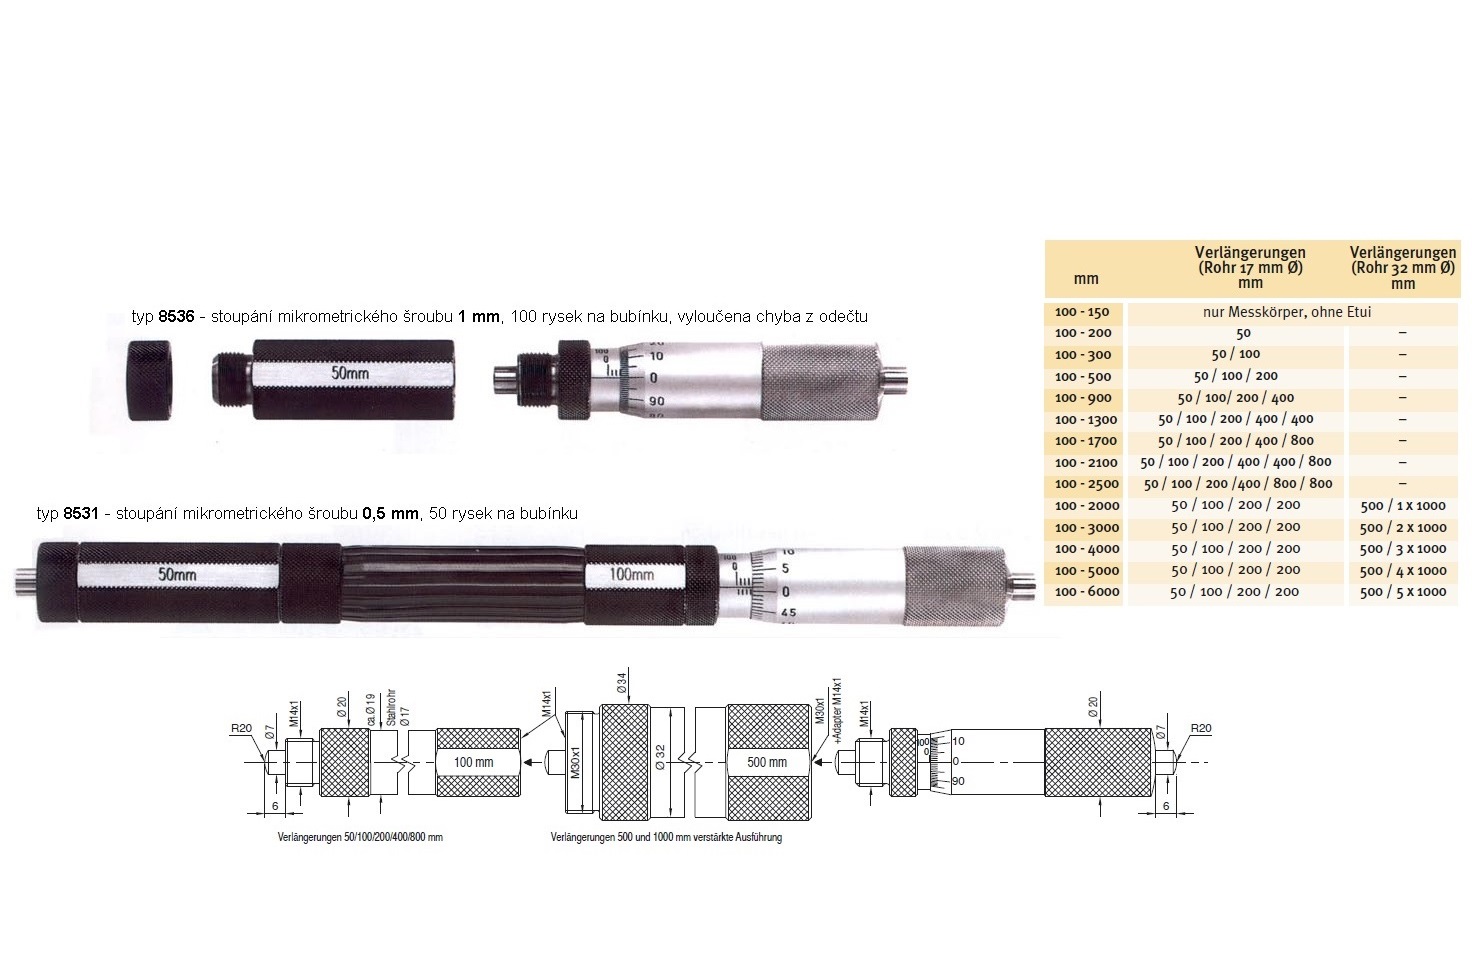 Mikrometrický odpich skládací HARTIG 100-6000 mm, stoupání šroubu 1 mm, doteky tvrdokov